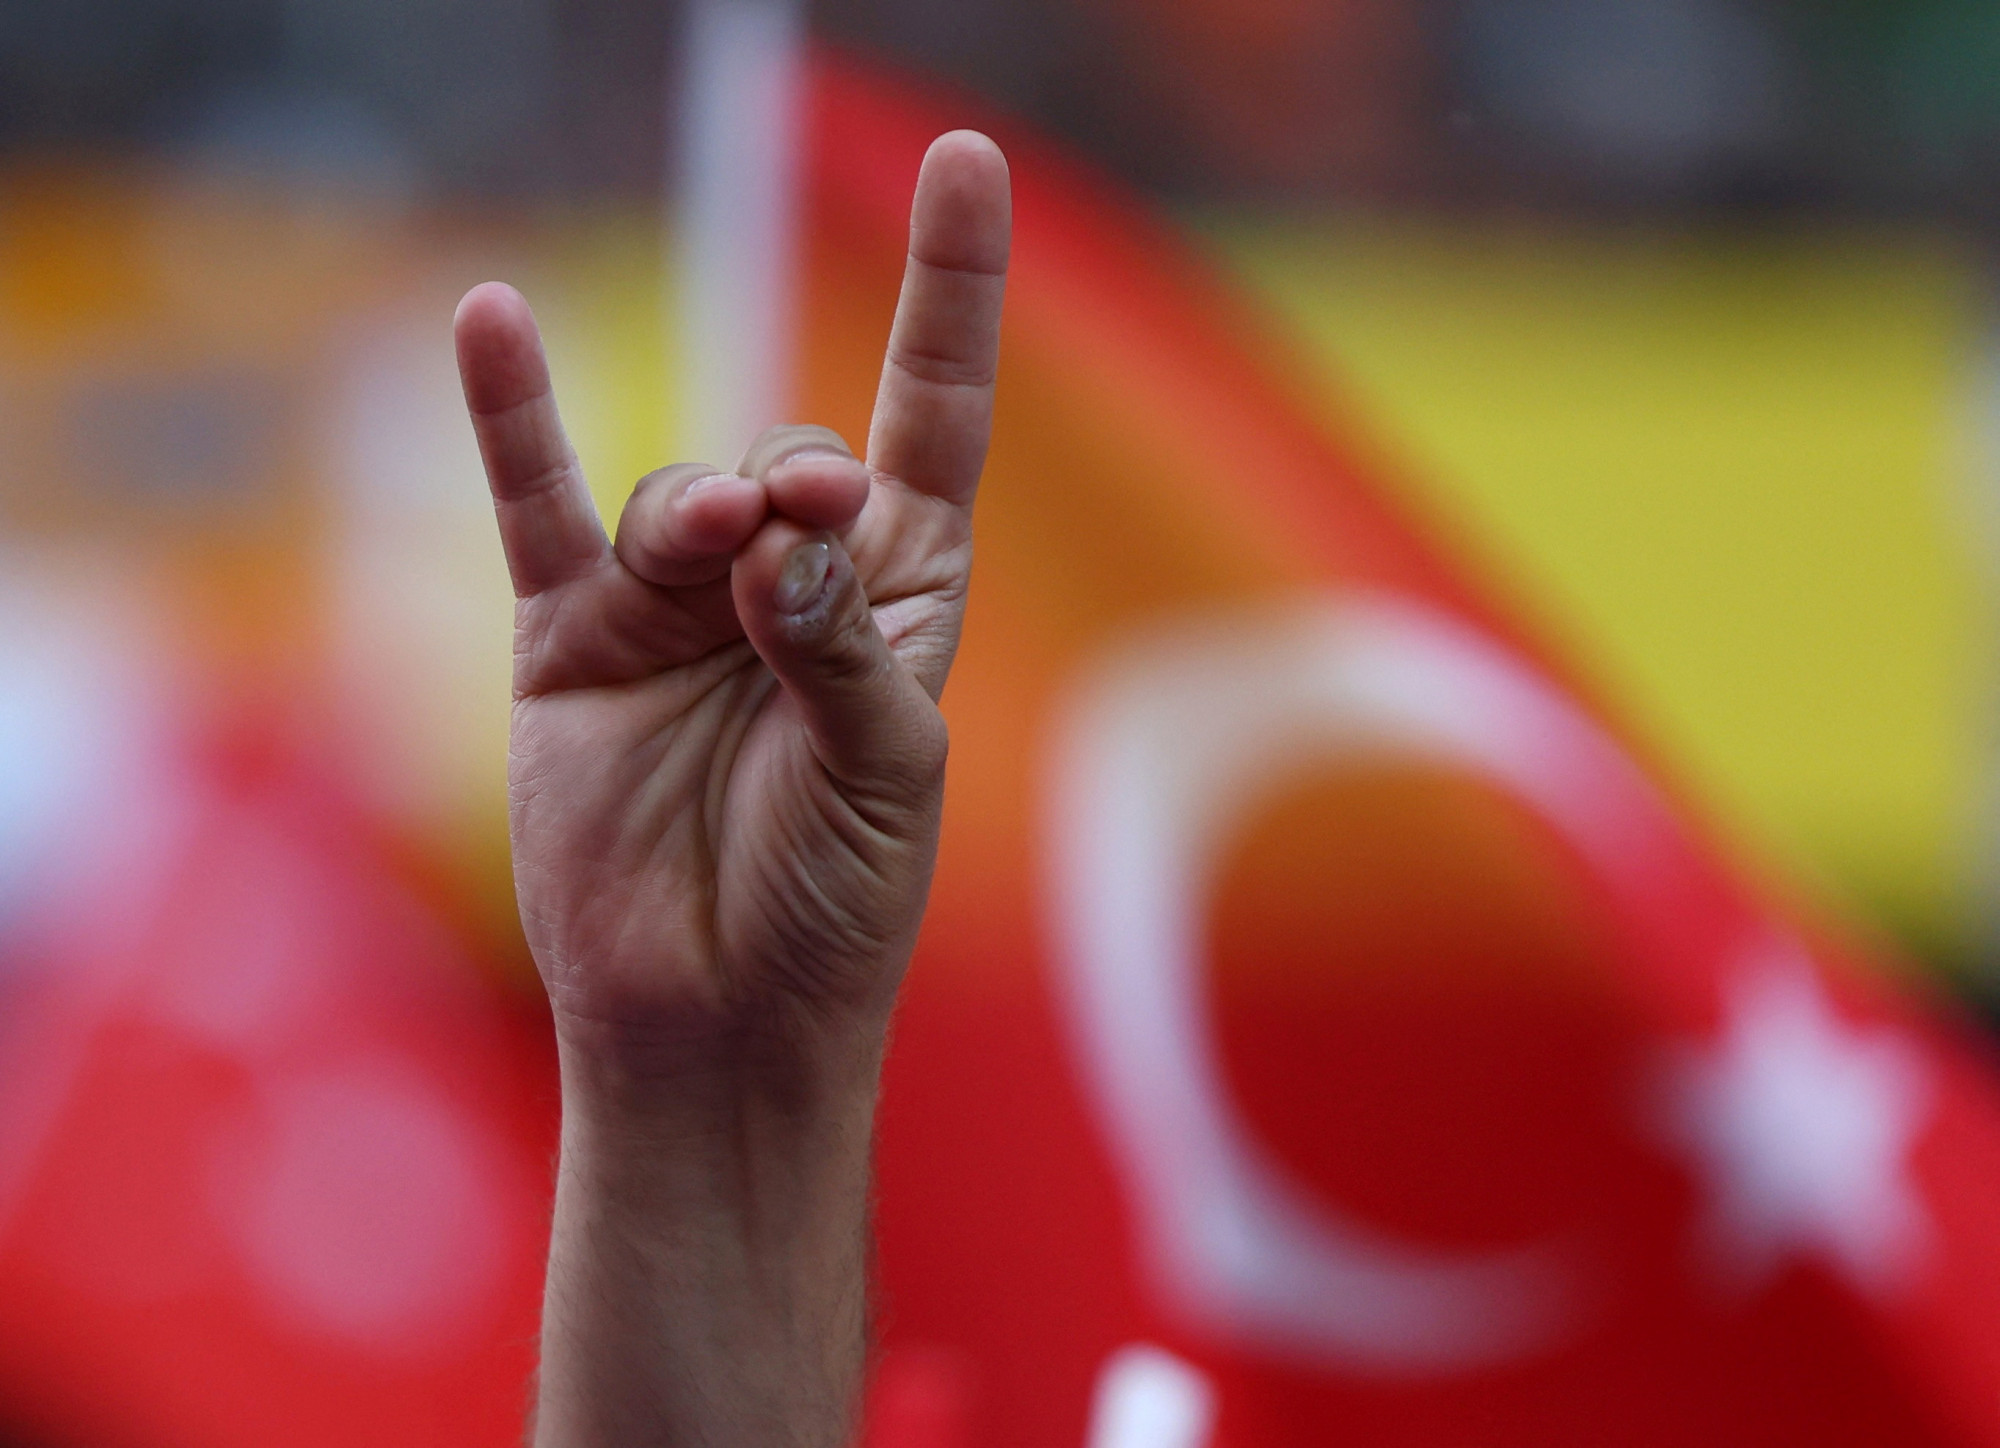 Egy német városban betiltottak egy kézjelet, ami túlságosan is hasonlított egy török szélsőjobbos kézjelhez